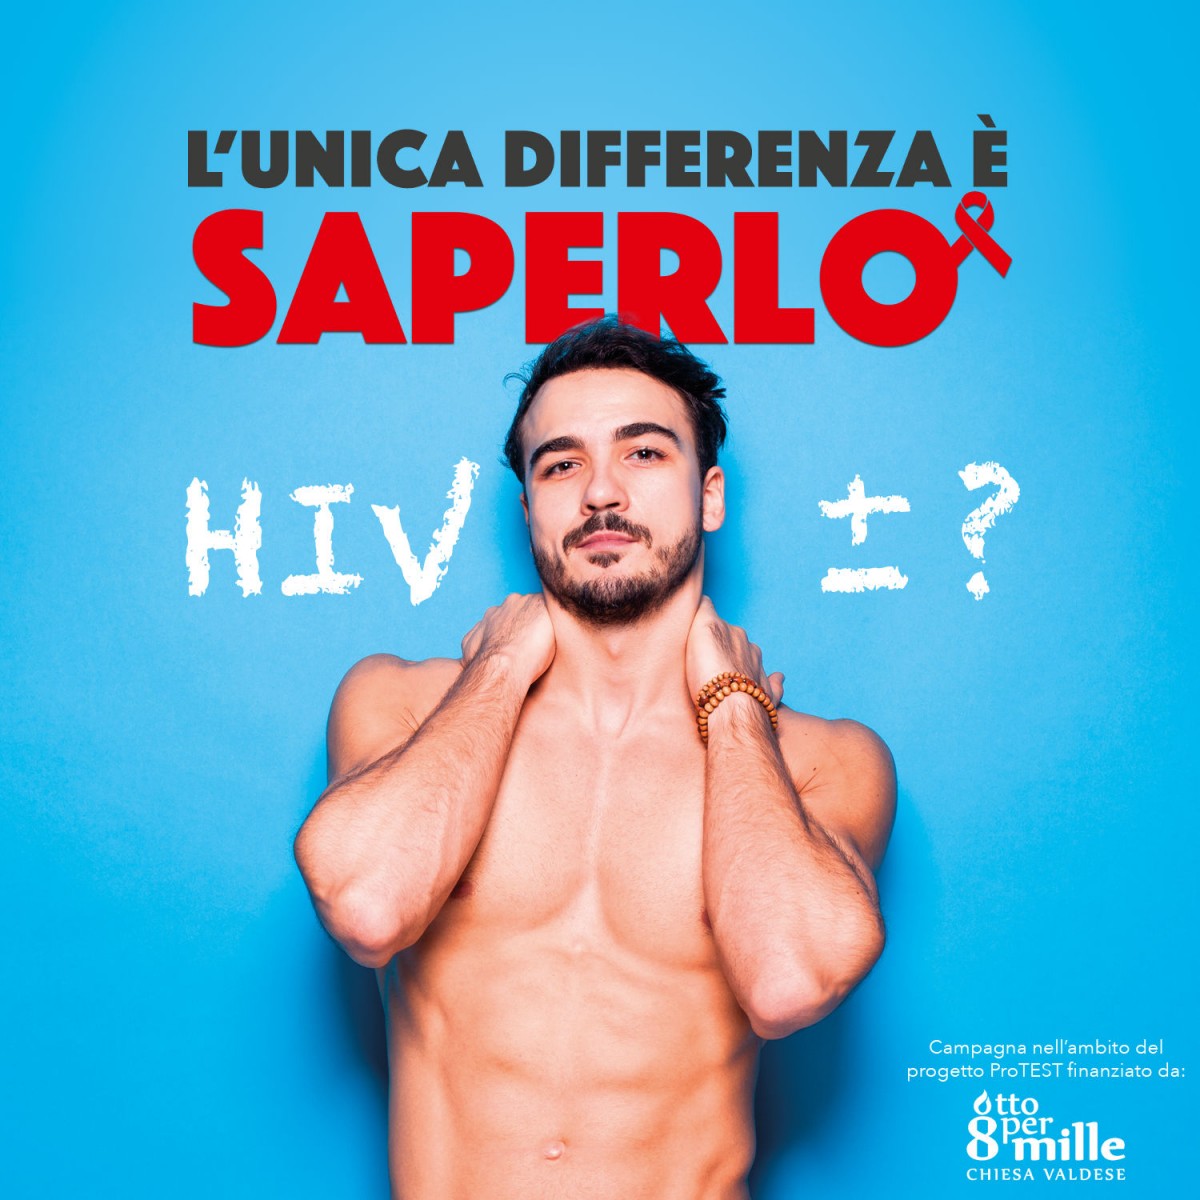 Facciamolo – Test HIV facile gratuito anonimo